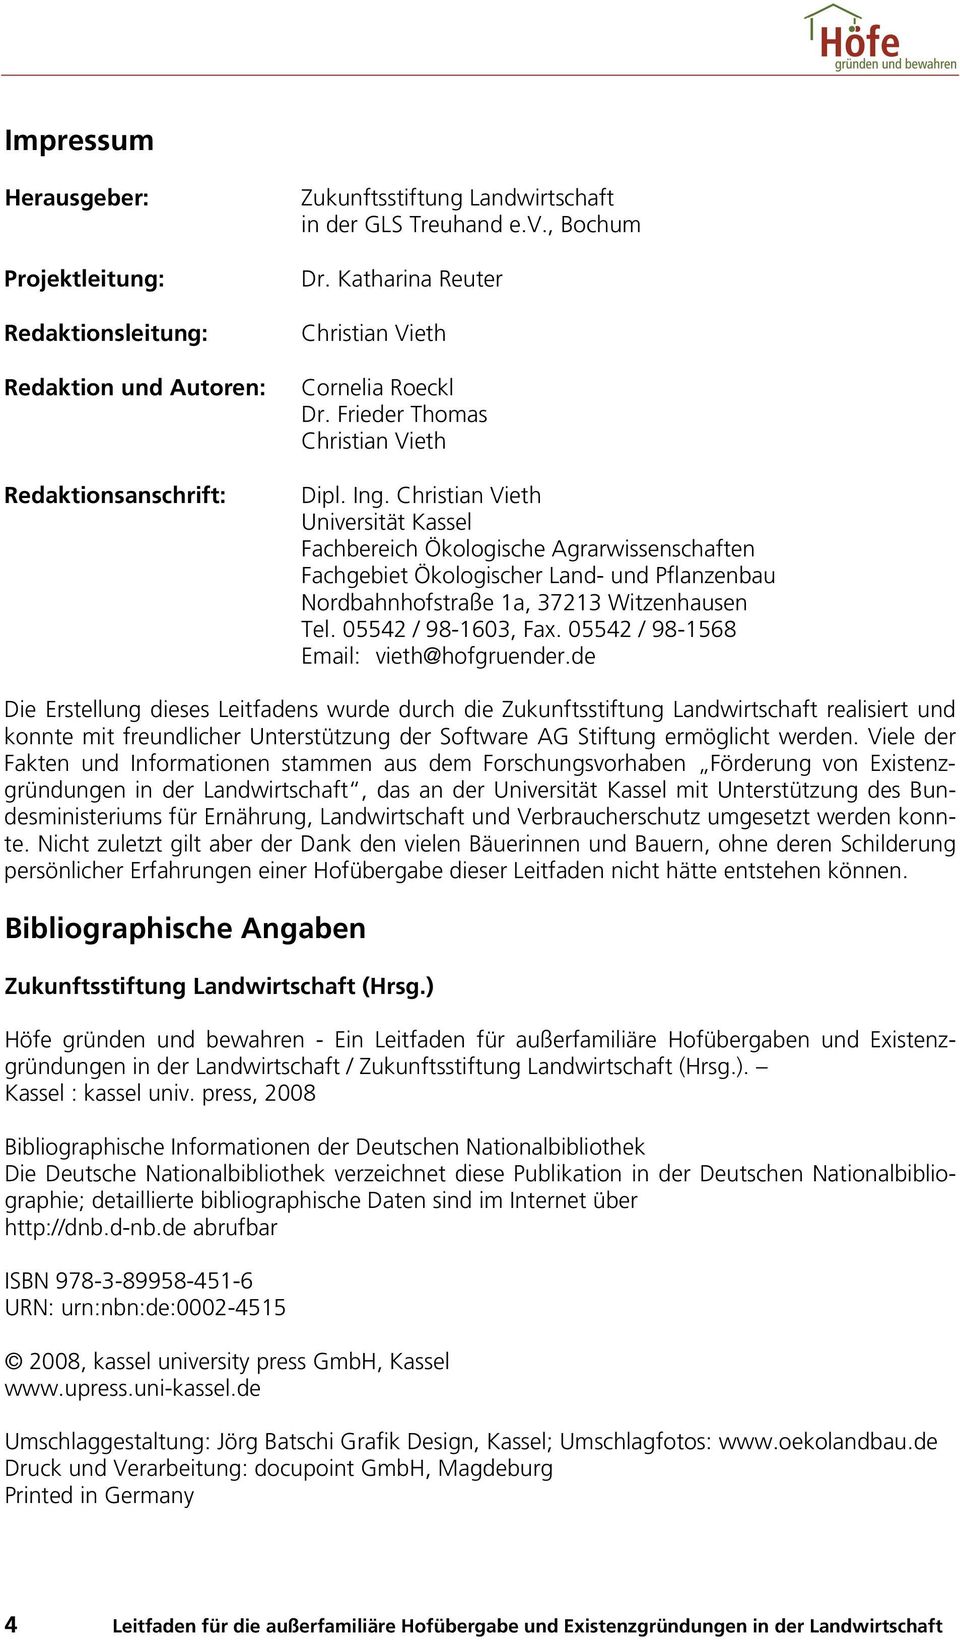 Christian Vieth Universität Kassel Fachbereich Ökologische Agrarwissenschaften Fachgebiet Ökologischer Land- und Pflanzenbau Nordbahnhofstraße 1a, 37213 Witzenhausen Tel. 05542 / 98-1603, Fax.